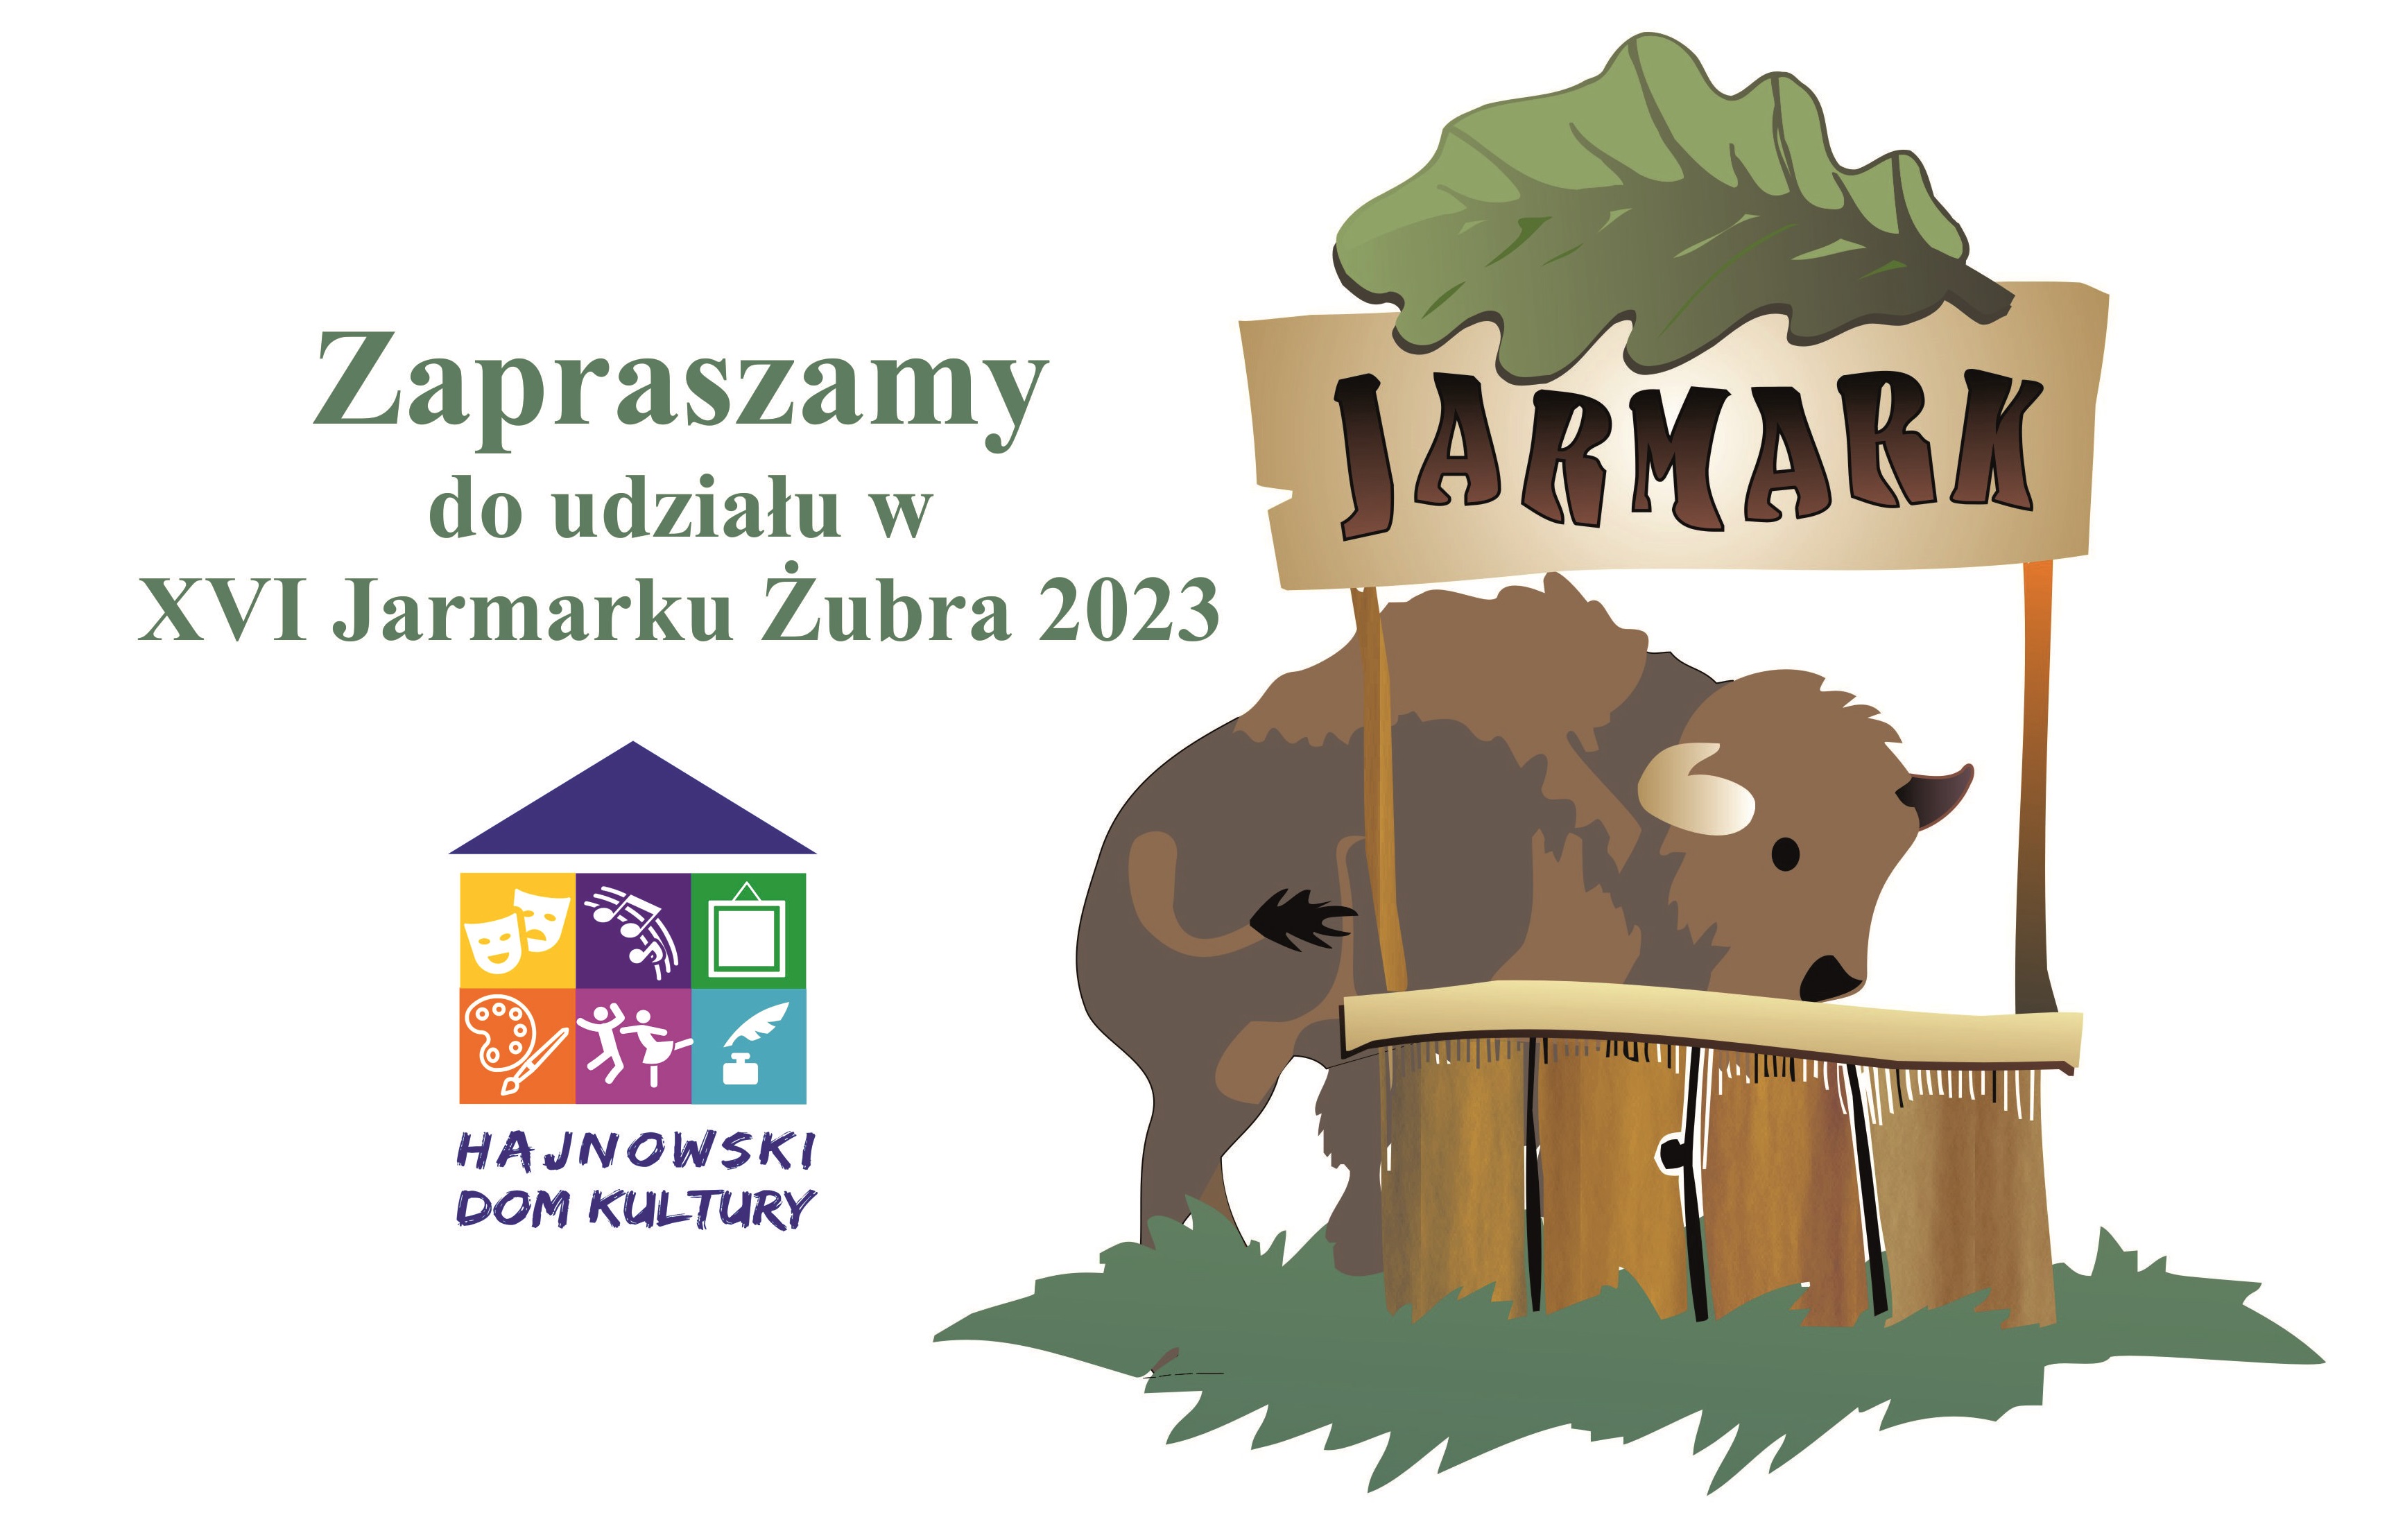 Plakat zapraszający do udziału w Jarmarku Żubra 2023